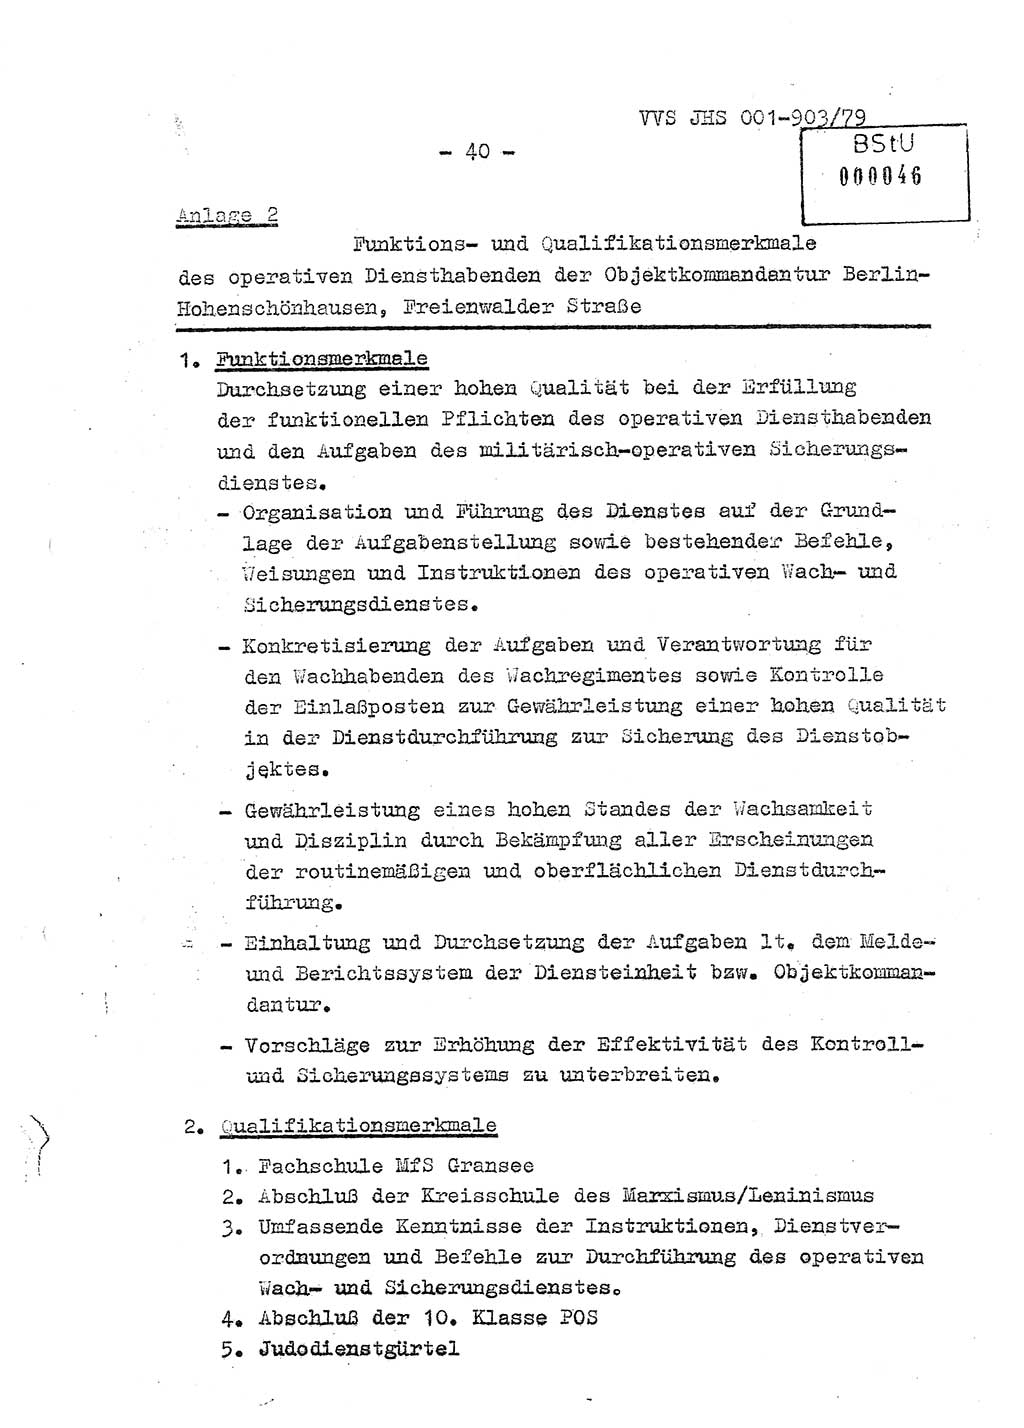 Fachschulabschlußarbeit Oberleutnant Jochen Pfeffer (HA Ⅸ/AGL), Ministerium für Staatssicherheit (MfS) [Deutsche Demokratische Republik (DDR)], Juristische Hochschule (JHS), Vertrauliche Verschlußsache (VVS) 001-903/79, Potsdam 1979, Seite 40 (FS-Abschl.-Arb. MfS DDR JHS VVS 001-903/79 1979, S. 40)